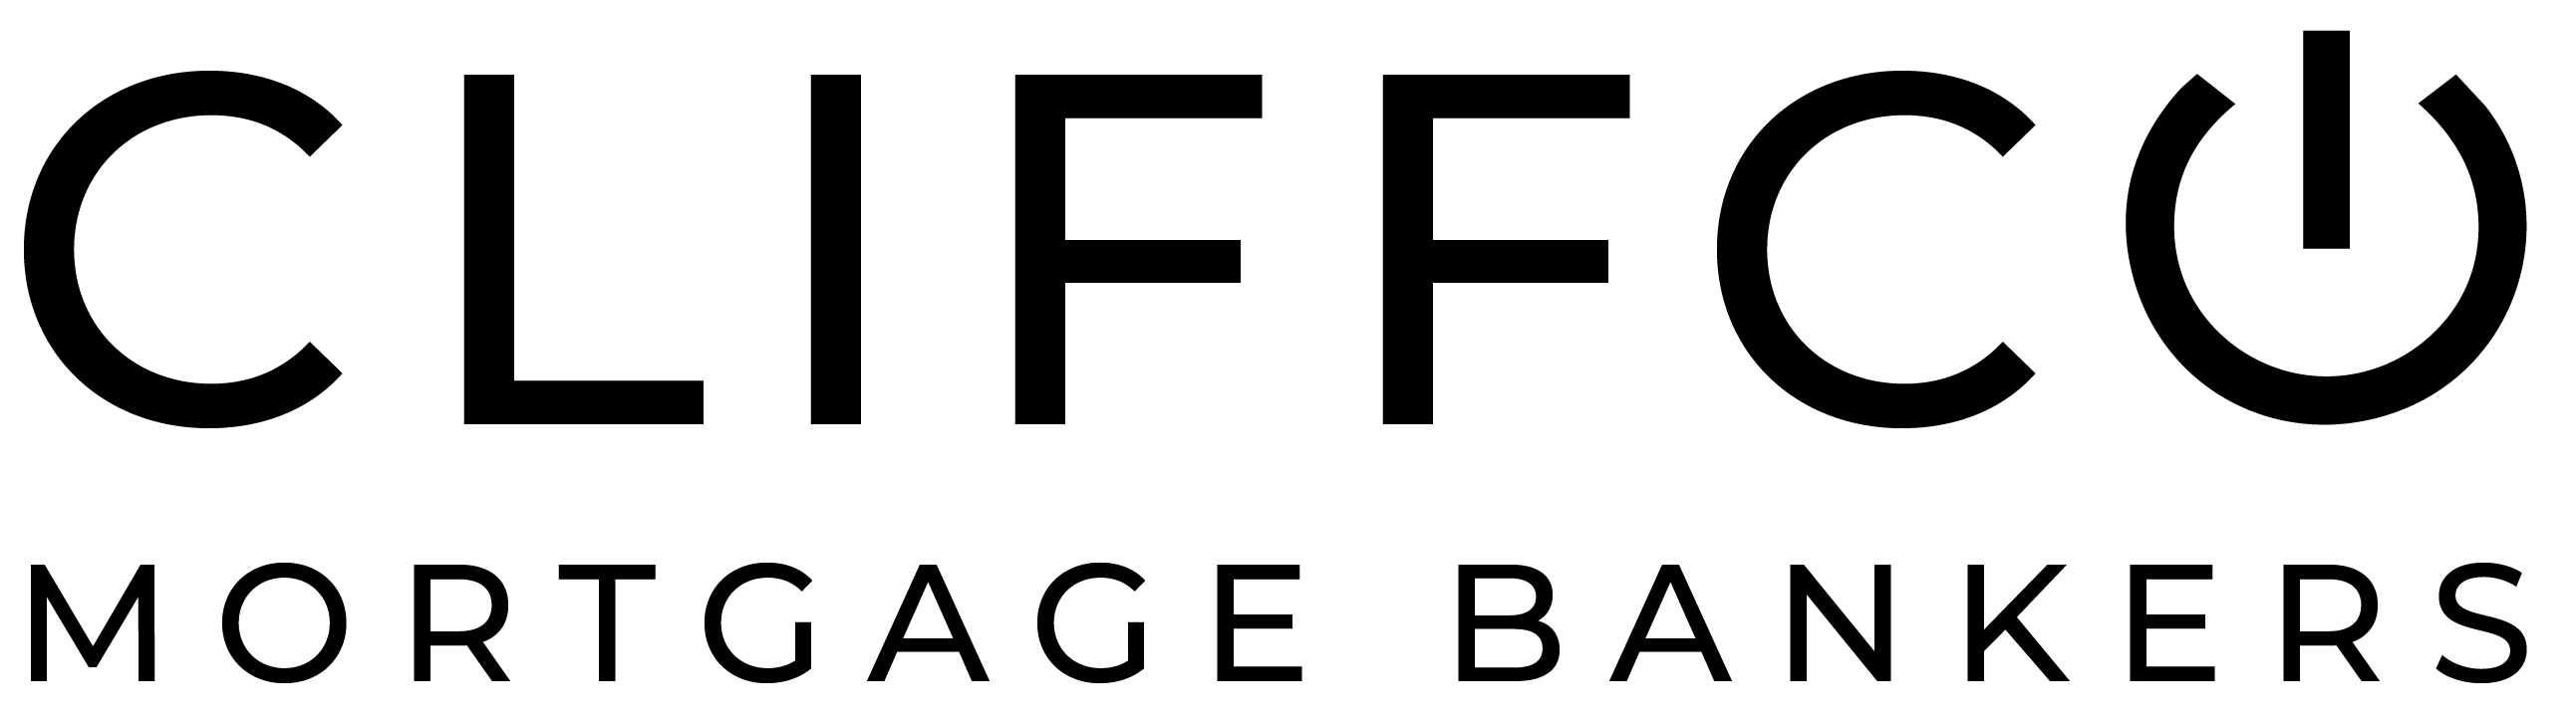 kevin kalyan Logo